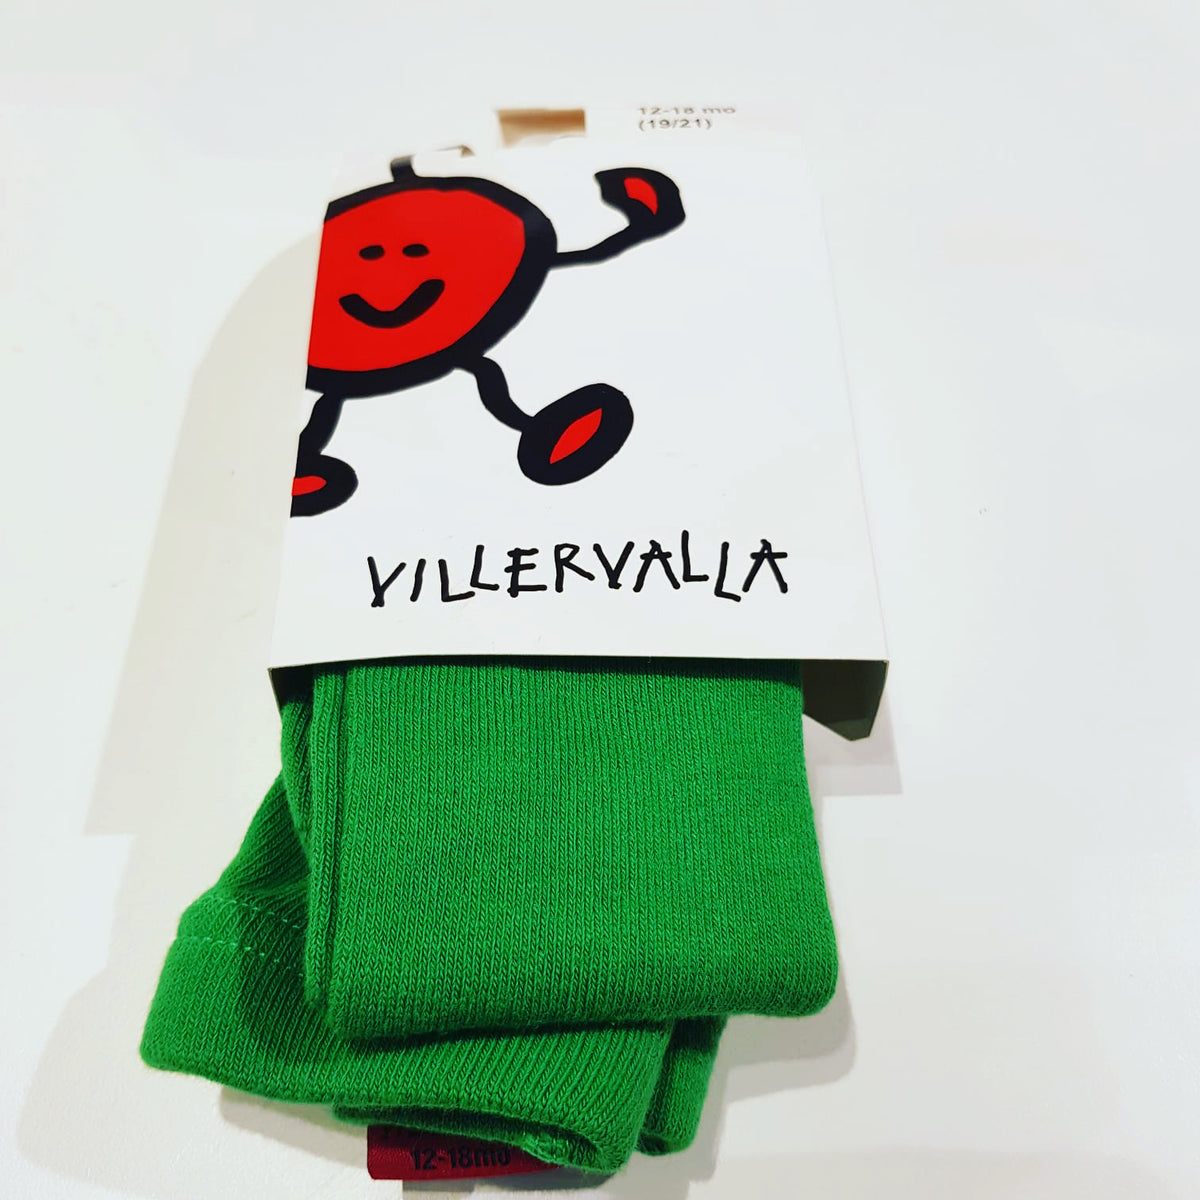 Villervalla - Tights Basil